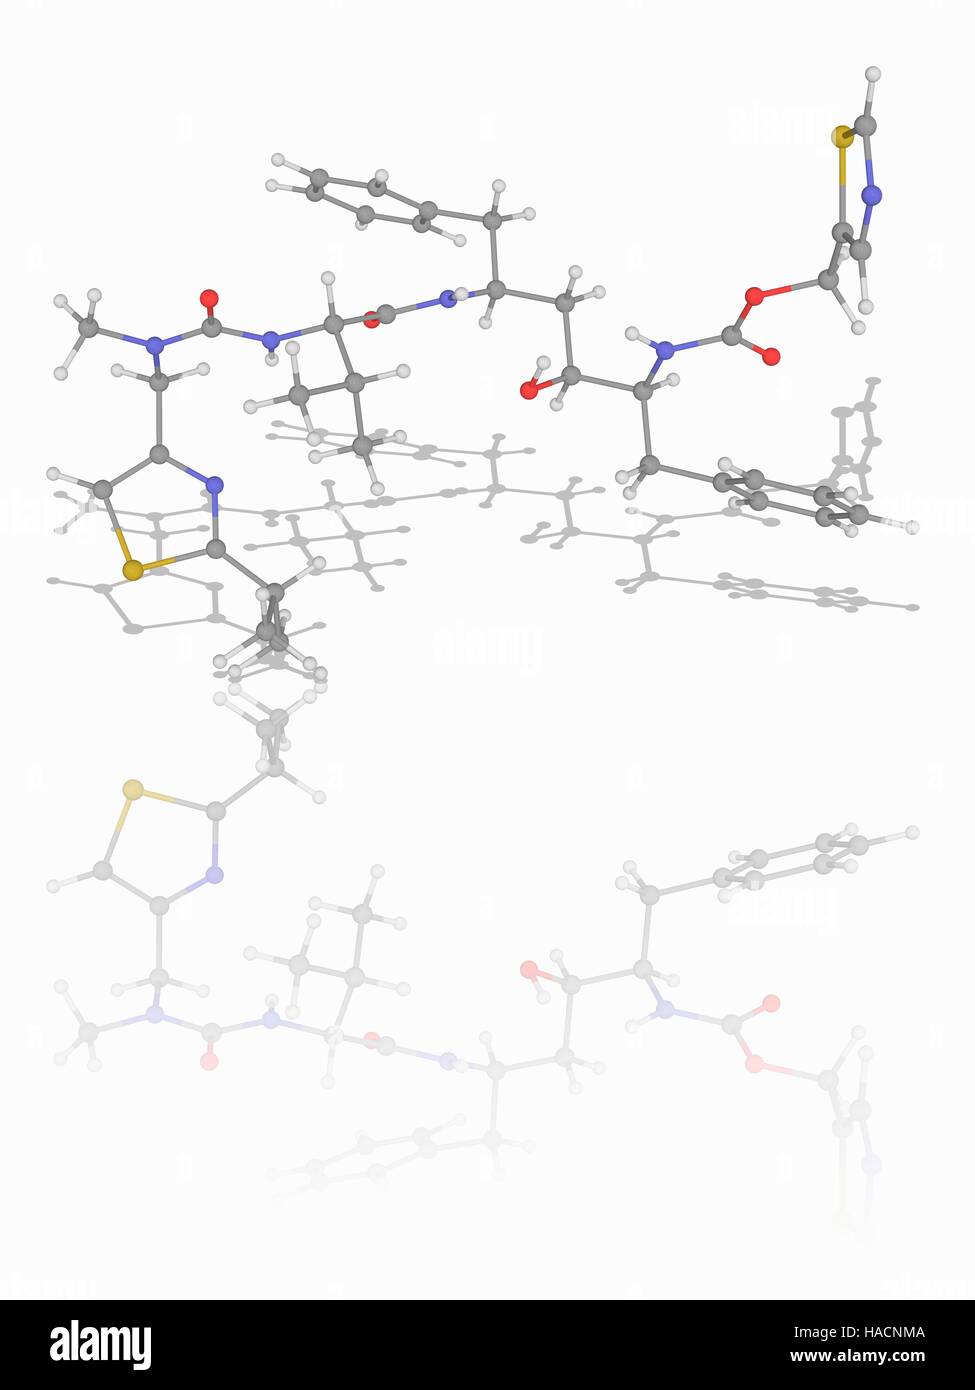 Il ritonavir. Il modello molecolare dei farmaci antiretrovirali di ritonavir (C37.H48.N6.O5.S2), un inibitore della proteasi usato per il trattamento di HIV (virus dell'immunodeficienza umana) infezione. Gli atomi sono rappresentati da sfere e sono codificati a colori: carbonio (grigio), Idrogeno (bianco), Azoto (blu), Ossigeno (rosso) e zolfo (giallo). Illustrazione. Foto Stock